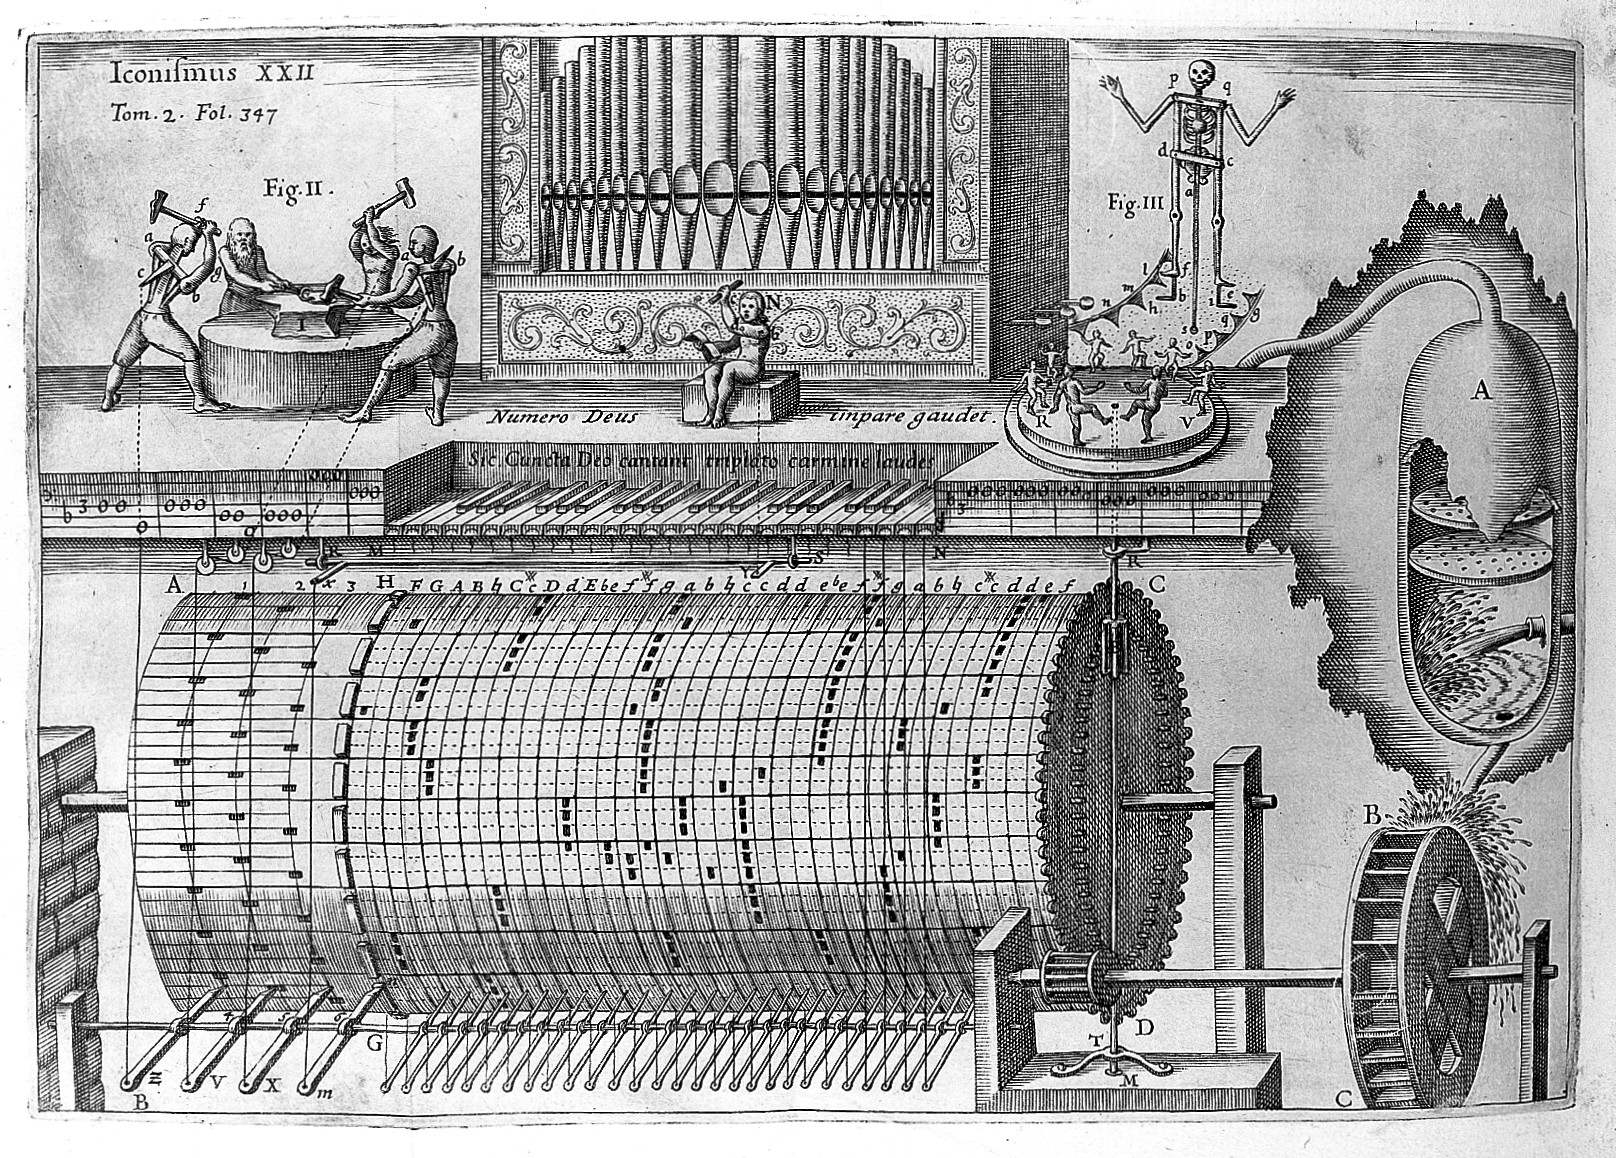 Lirekassen historisk set. Athanasius Kircher bragte i 1650, i bogen, Musurgia Universalis,tegninger og beskrivelse af et mekanisk orgel, drevet af vand.